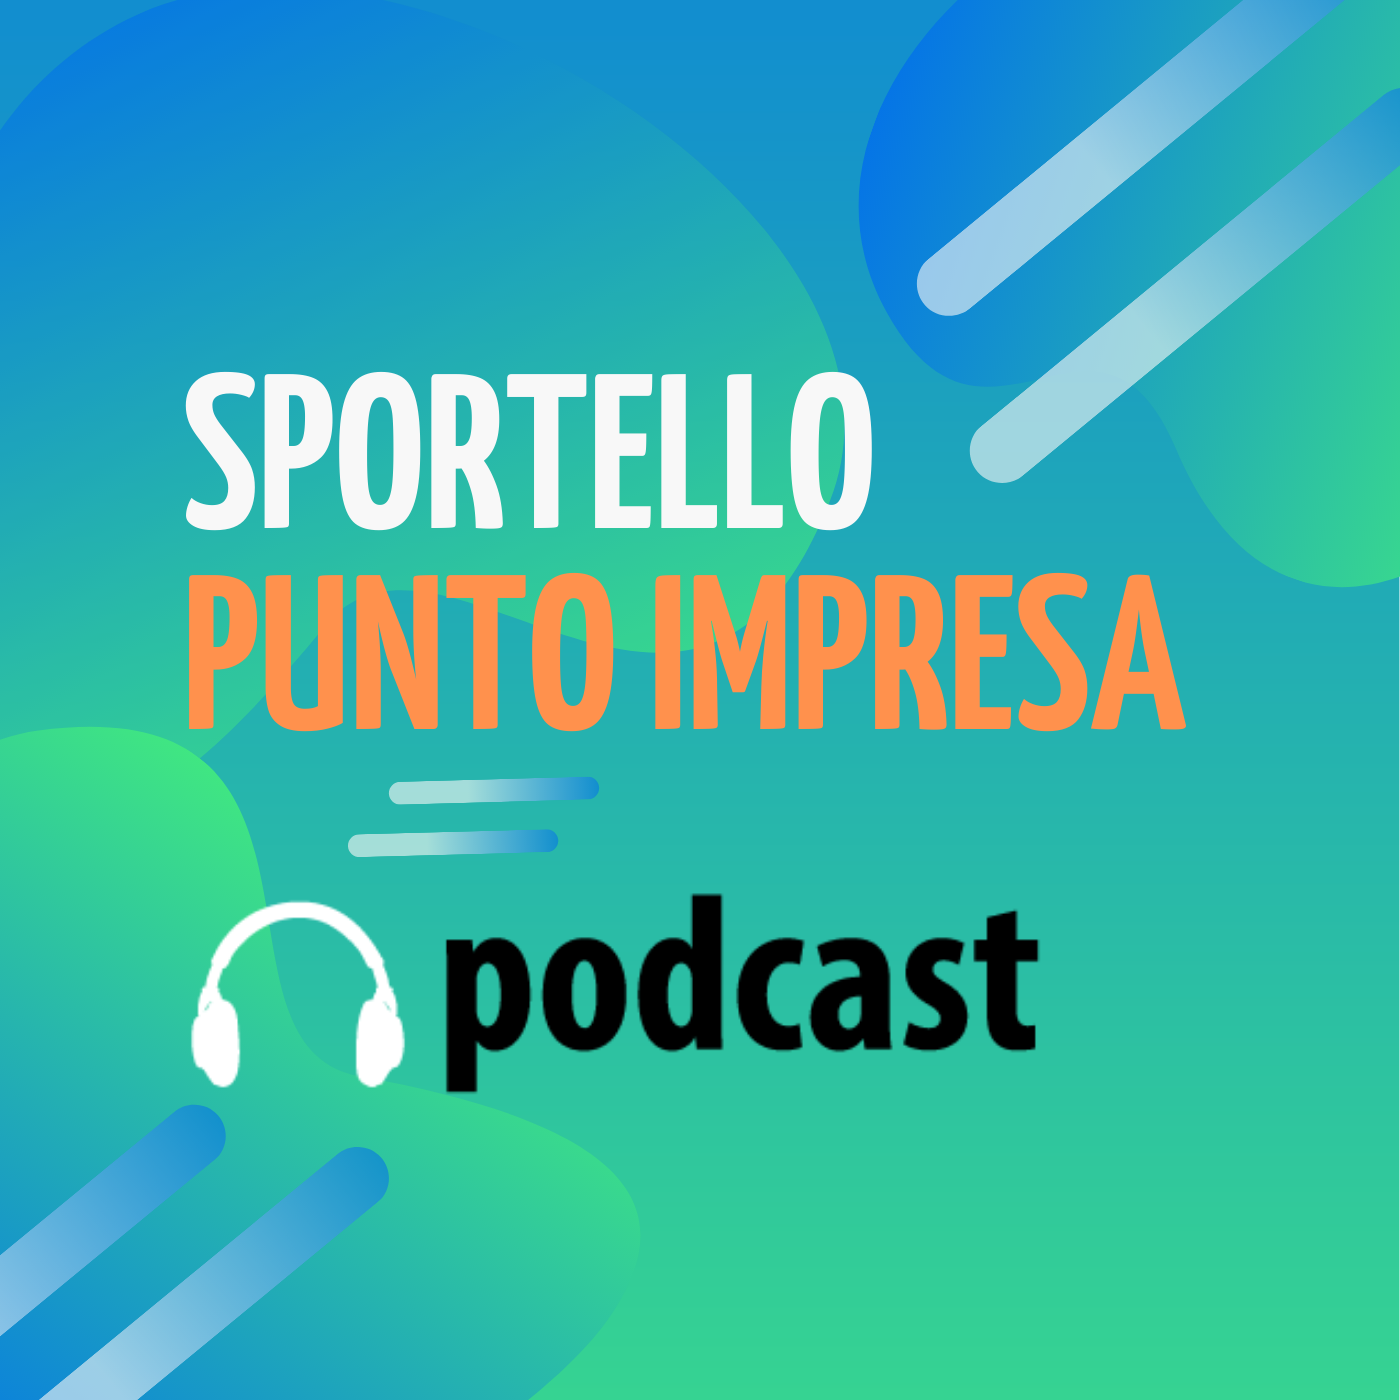 Podcast Sportello Punto Impresa